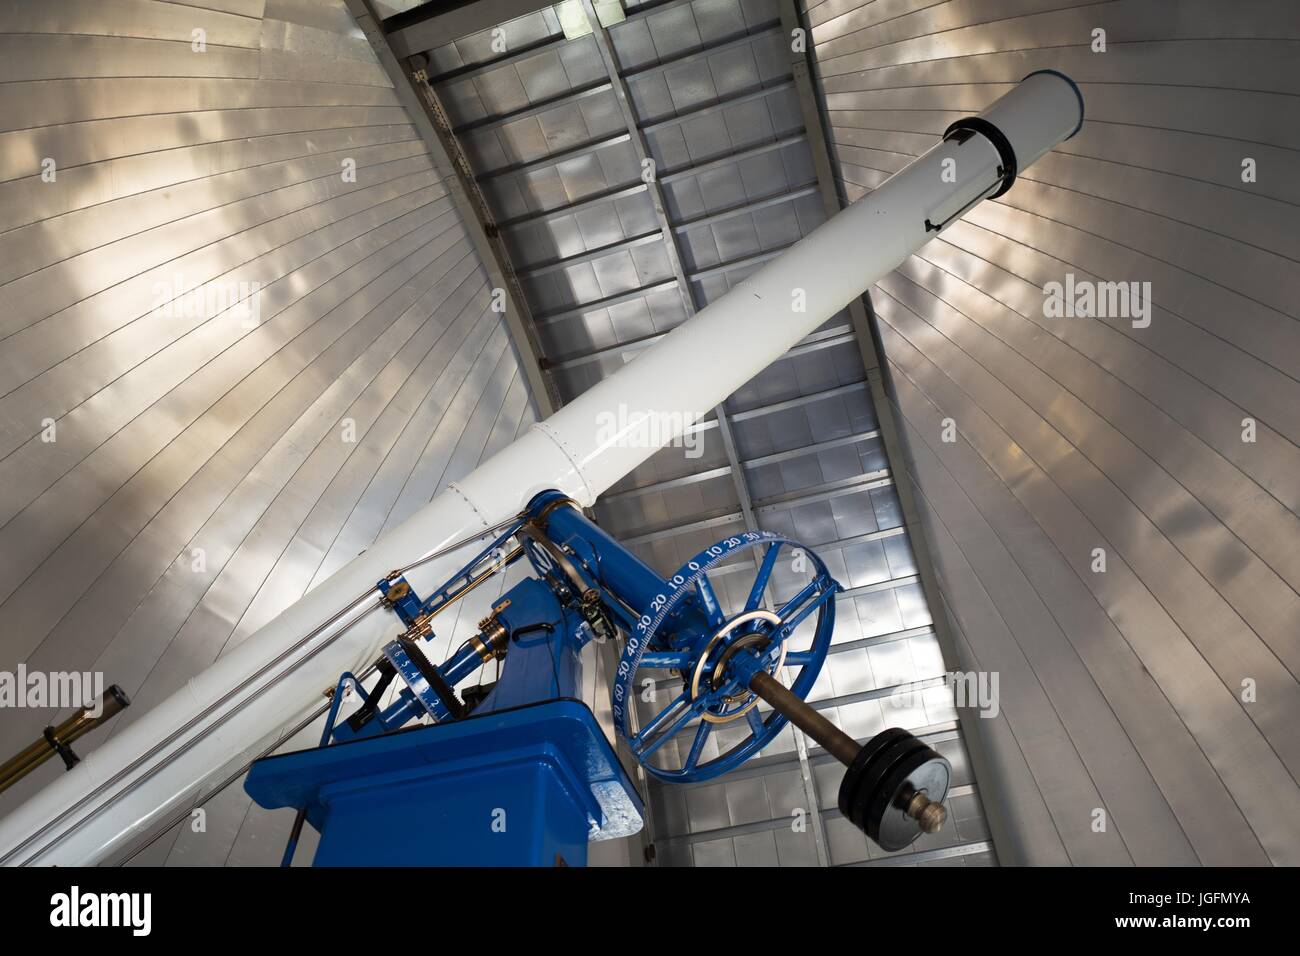 20 pulgadas de diámetro, telescopio de refracci n de Warner y Swasey,  apodado Rachel, instalados originalmente en Chabot Observatorio en 1914 y  ahora se usa en el Chabot espacio y Science Center,